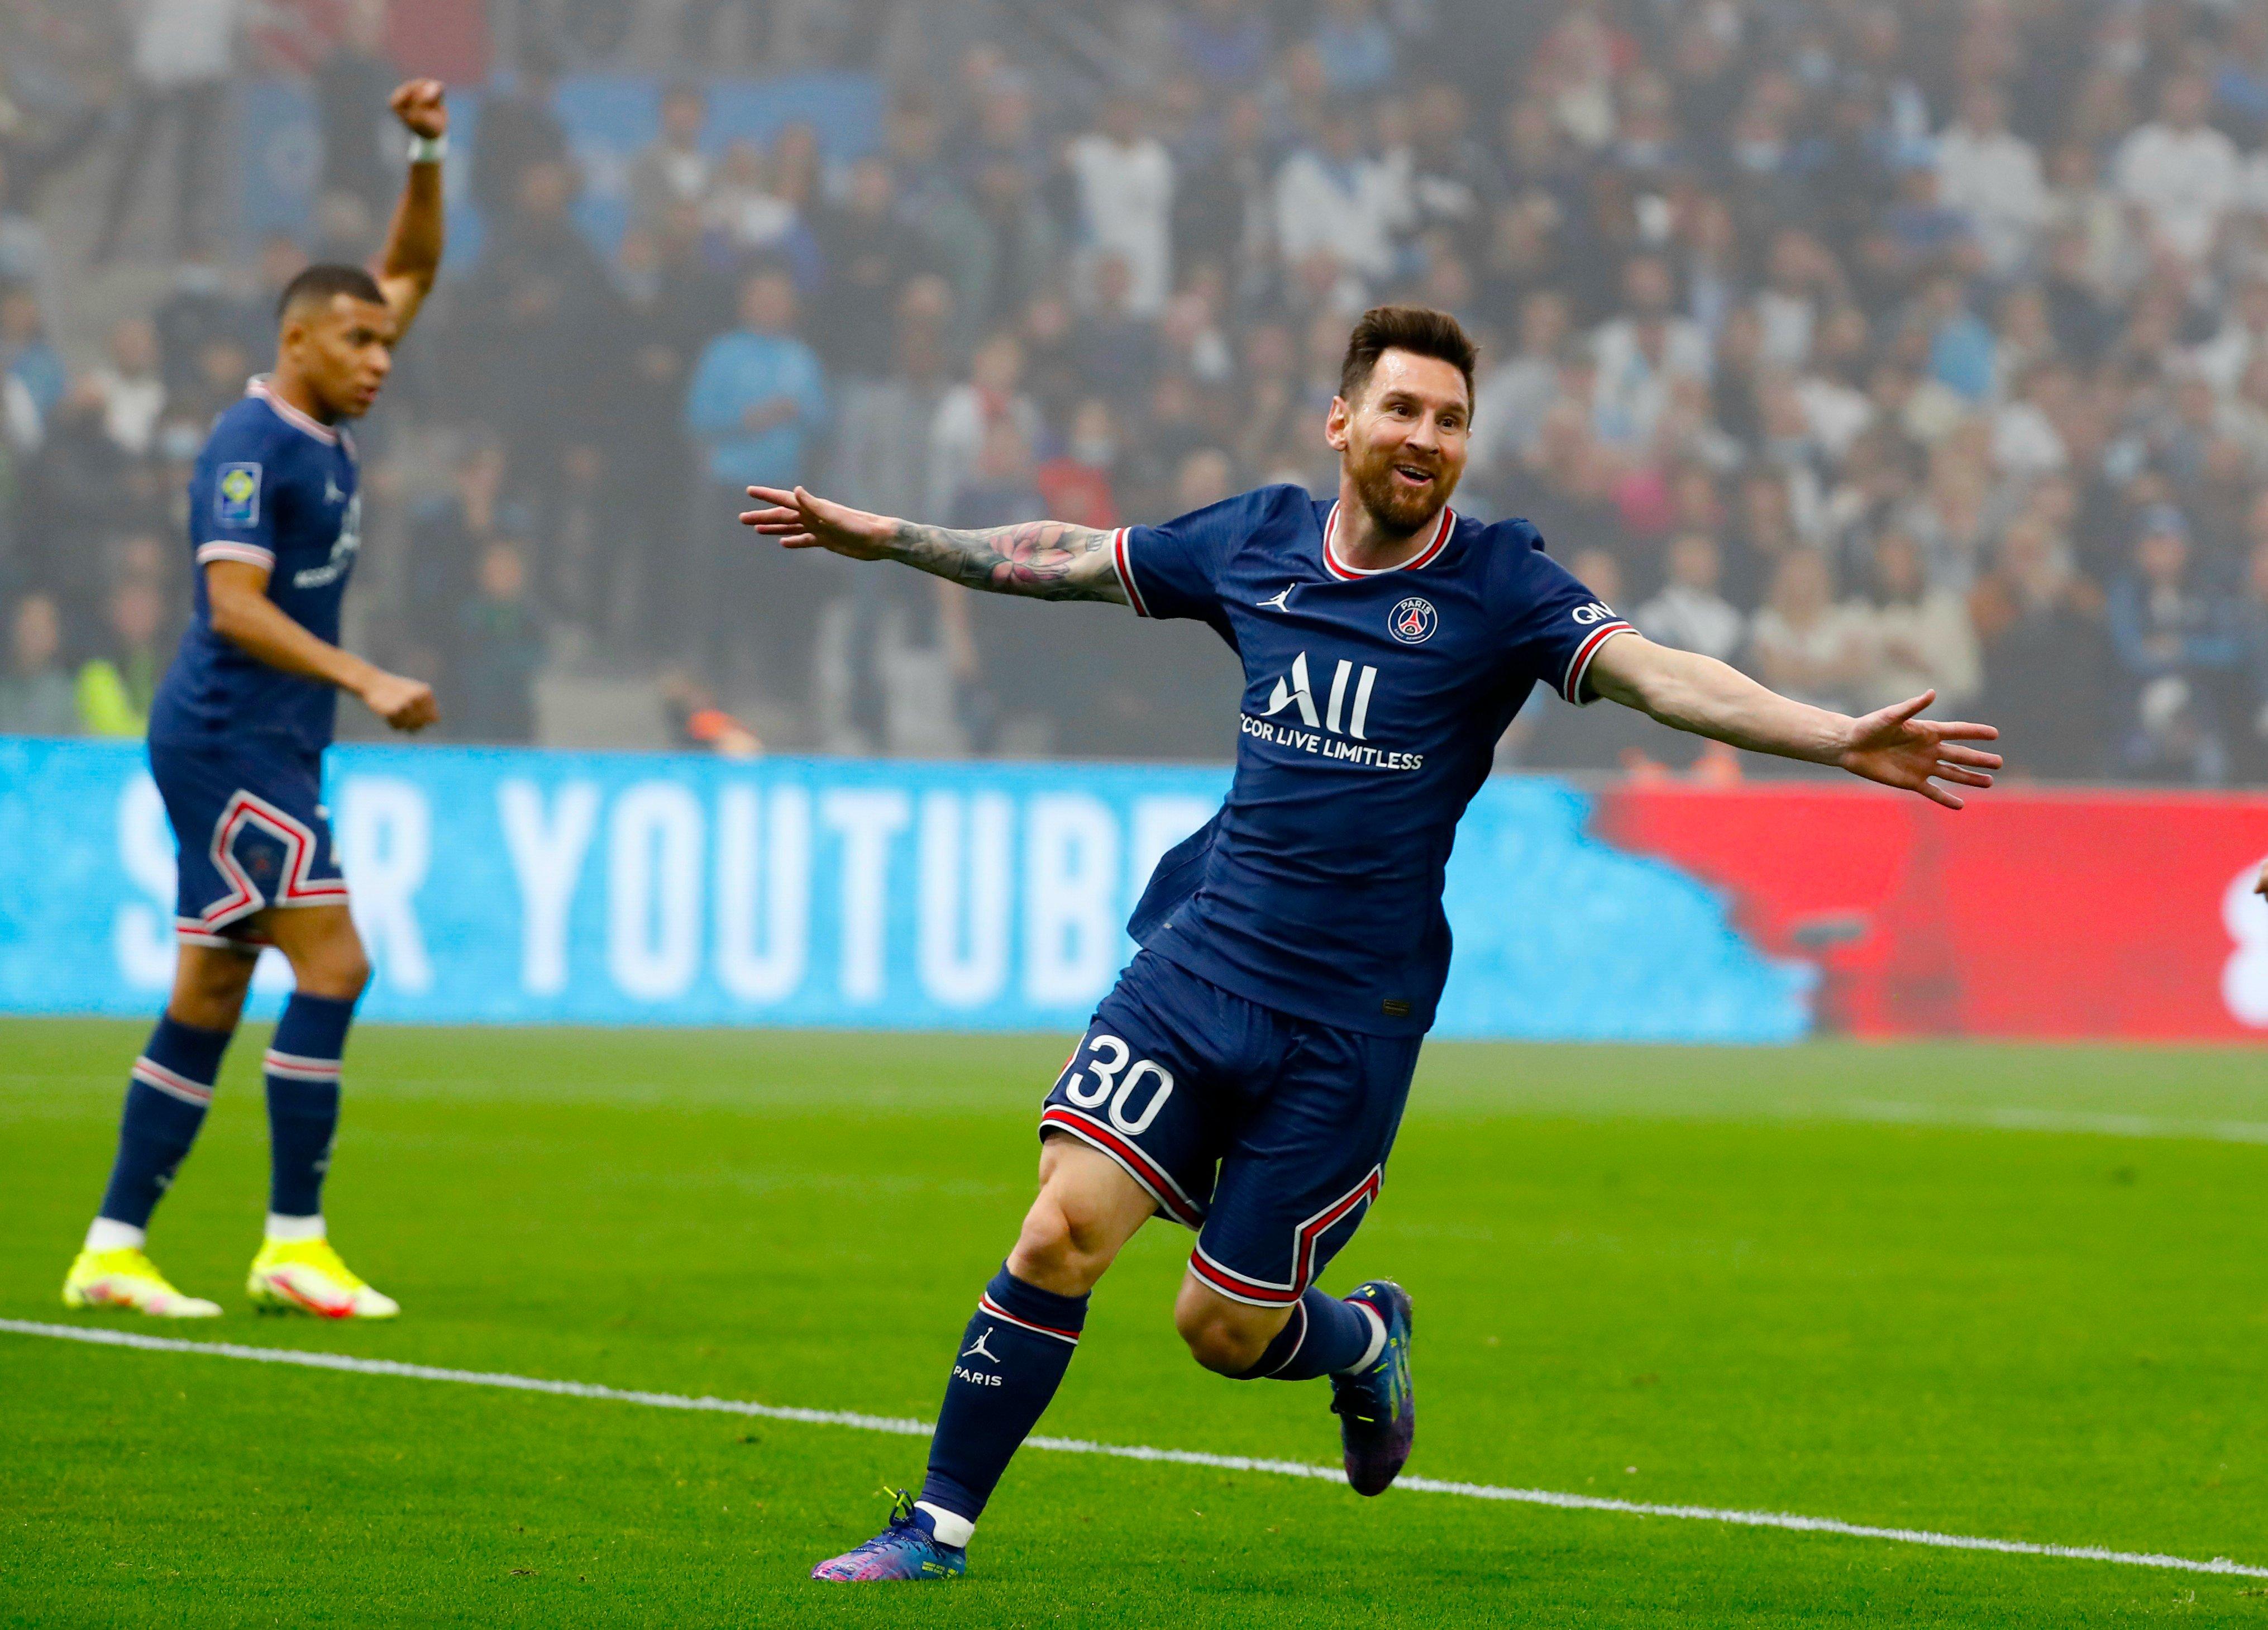 Hãy chiêm ngưỡng vẻ đẹp của những bức ảnh Messi khiến người hâm mộ PSG mê mẩn. Cùng nhìn ngắm các khoảnh khắc đặc biệt của siêu sao bên đồng đội mới.